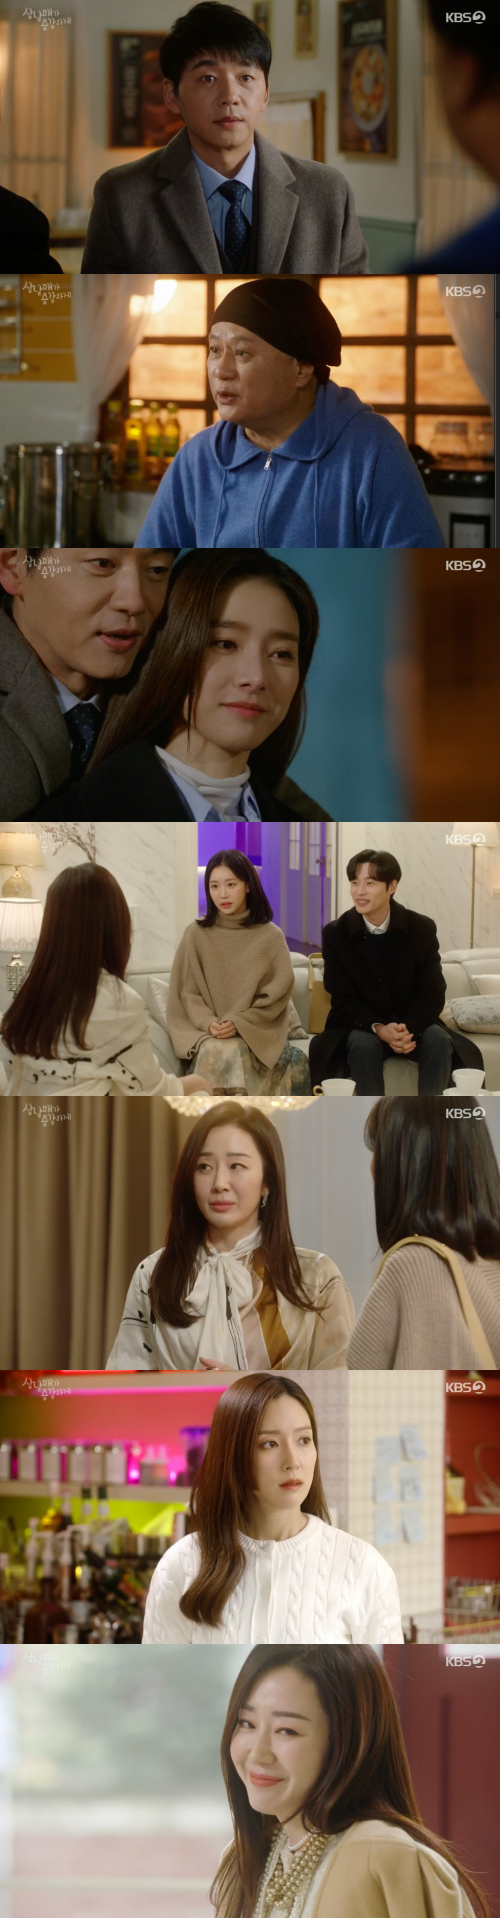 /사진=KBS 2TV 주말드라마 '삼남매가 용감하게' 방송 화면 캡쳐